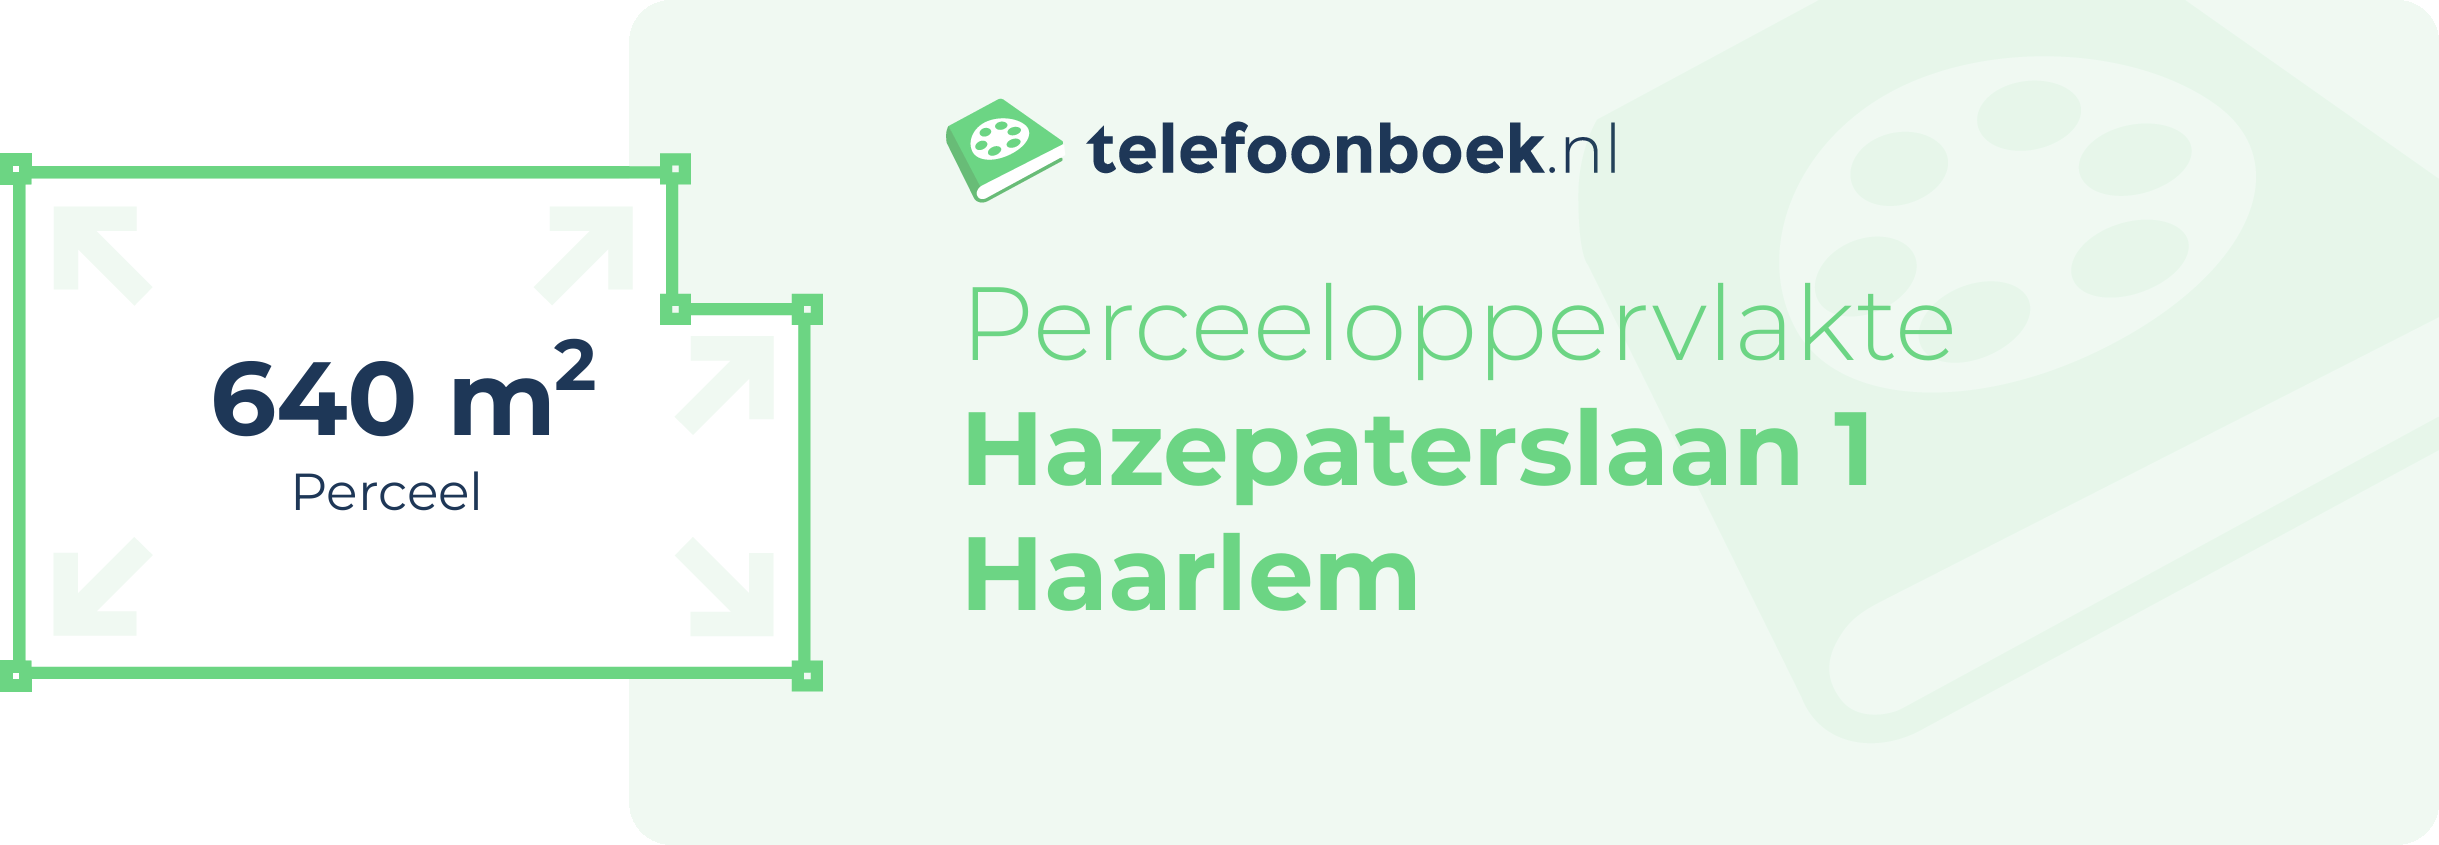 Perceeloppervlakte Hazepaterslaan 1 Haarlem